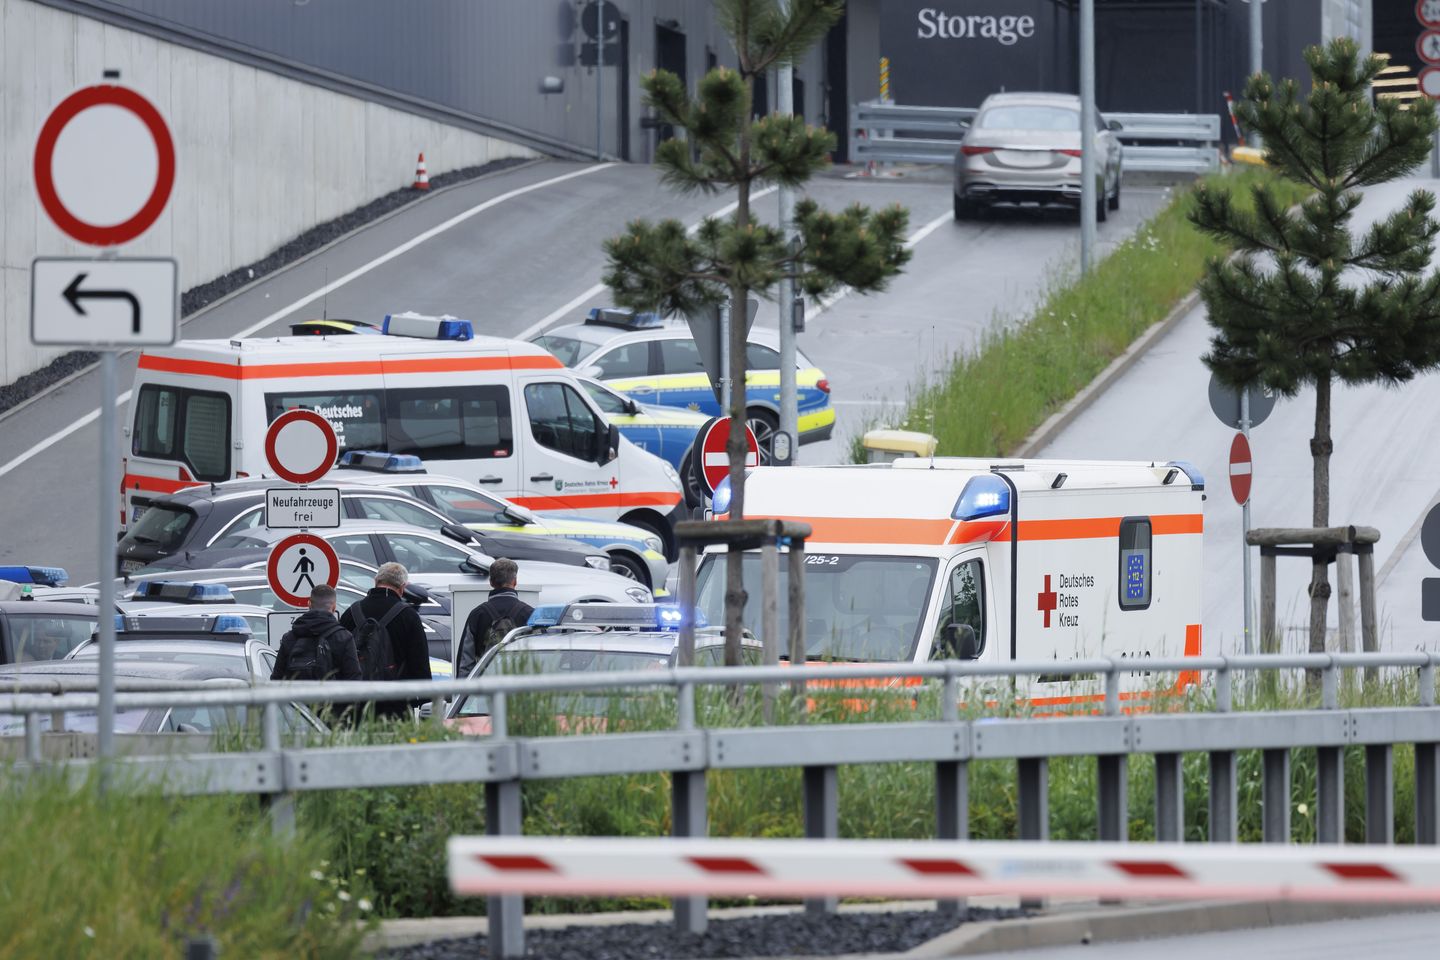 Almanya'daki Mercedes-Benz fabrikasında iki işçi vurularak öldürüldü; tutuklu zanlı